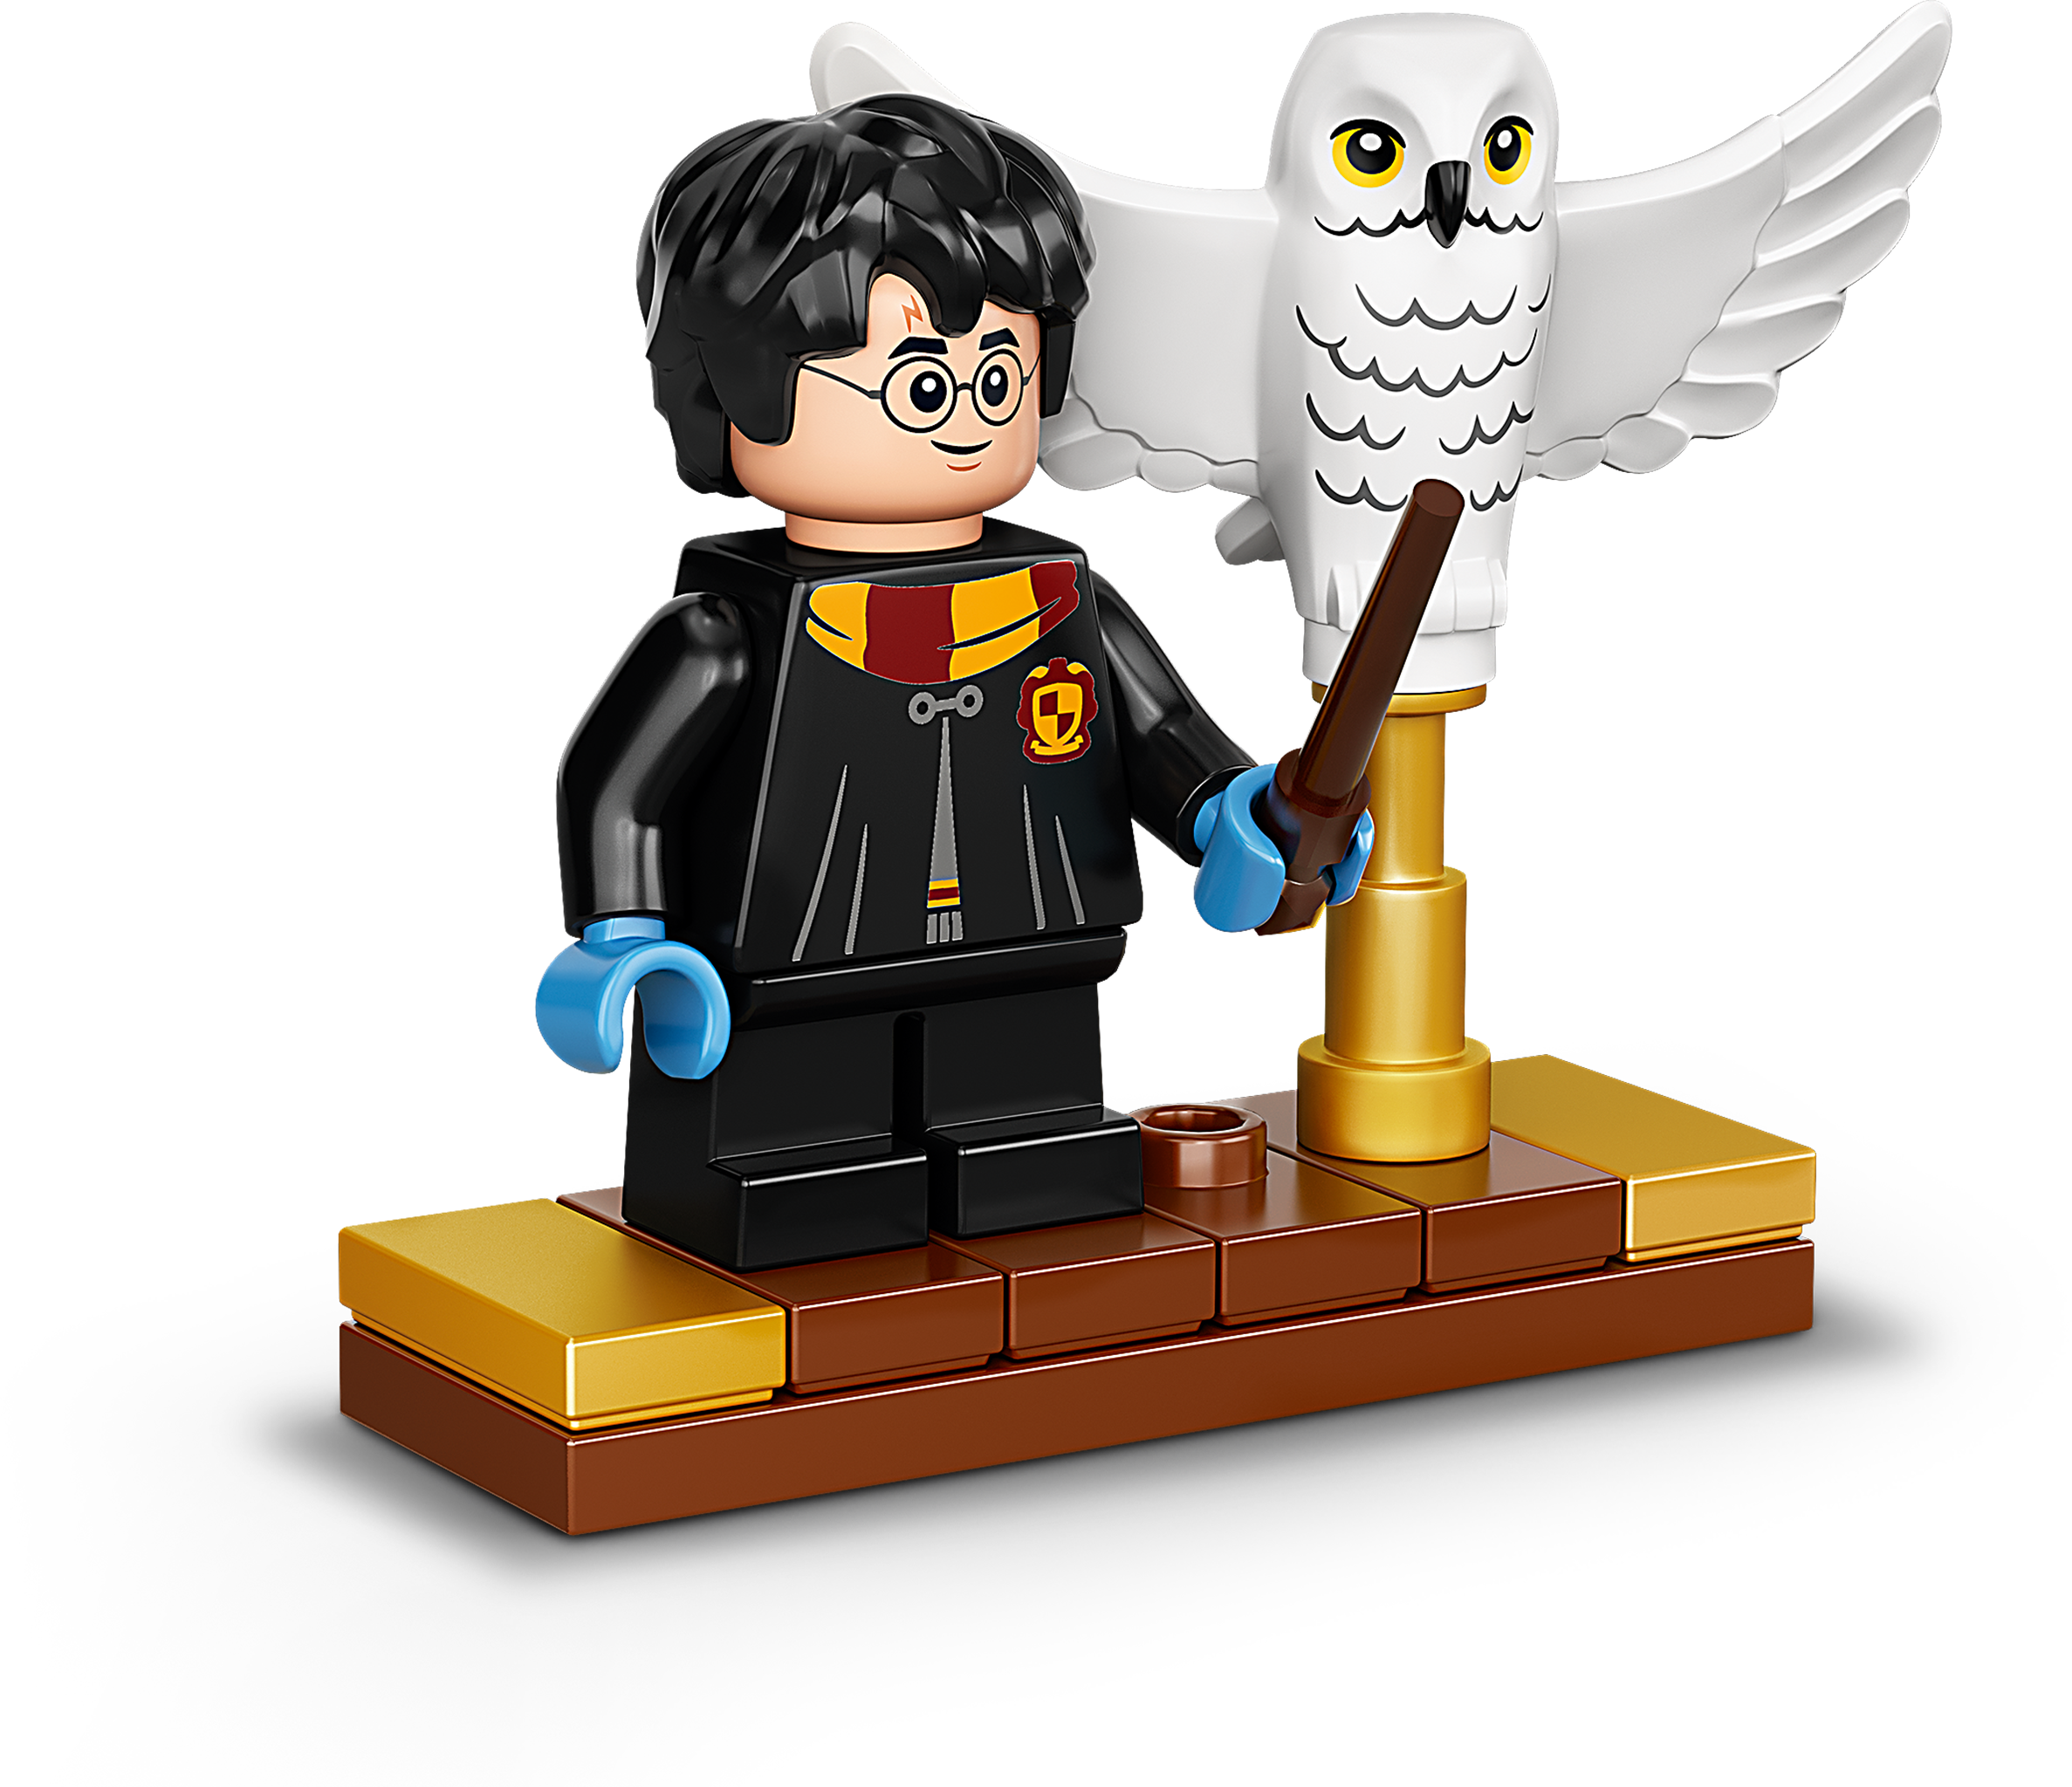 LEGO Harry Potter - Hedwig, Harry Potter